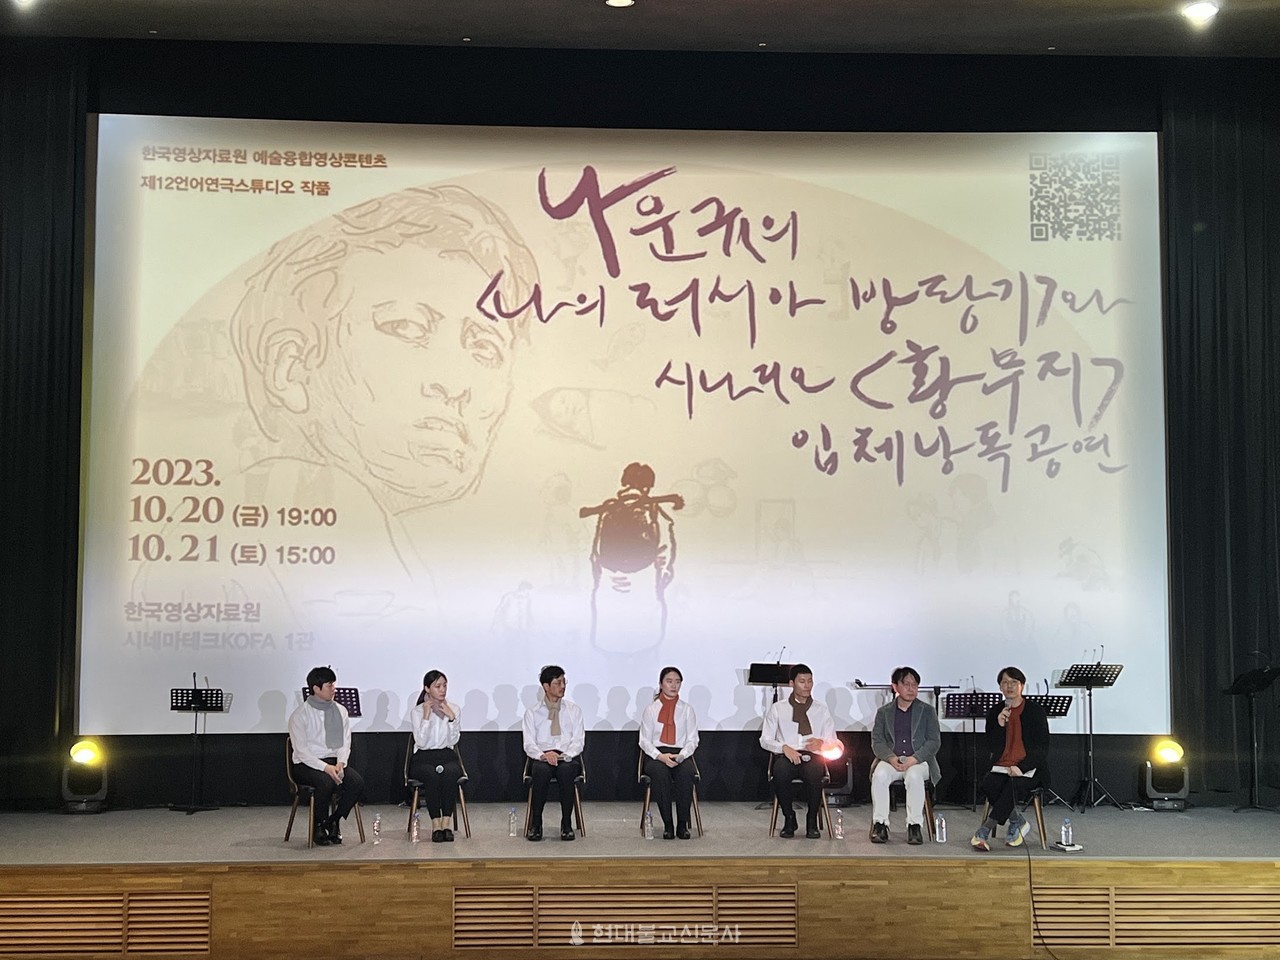 한국영상자료원이 10월 20, 21일 이틀에 걸쳐 개최한 ‘나운규의 〈나의 러시아 방랑기〉와 시나리오 〈황무지〉 입체낭독 공연’의 모습.